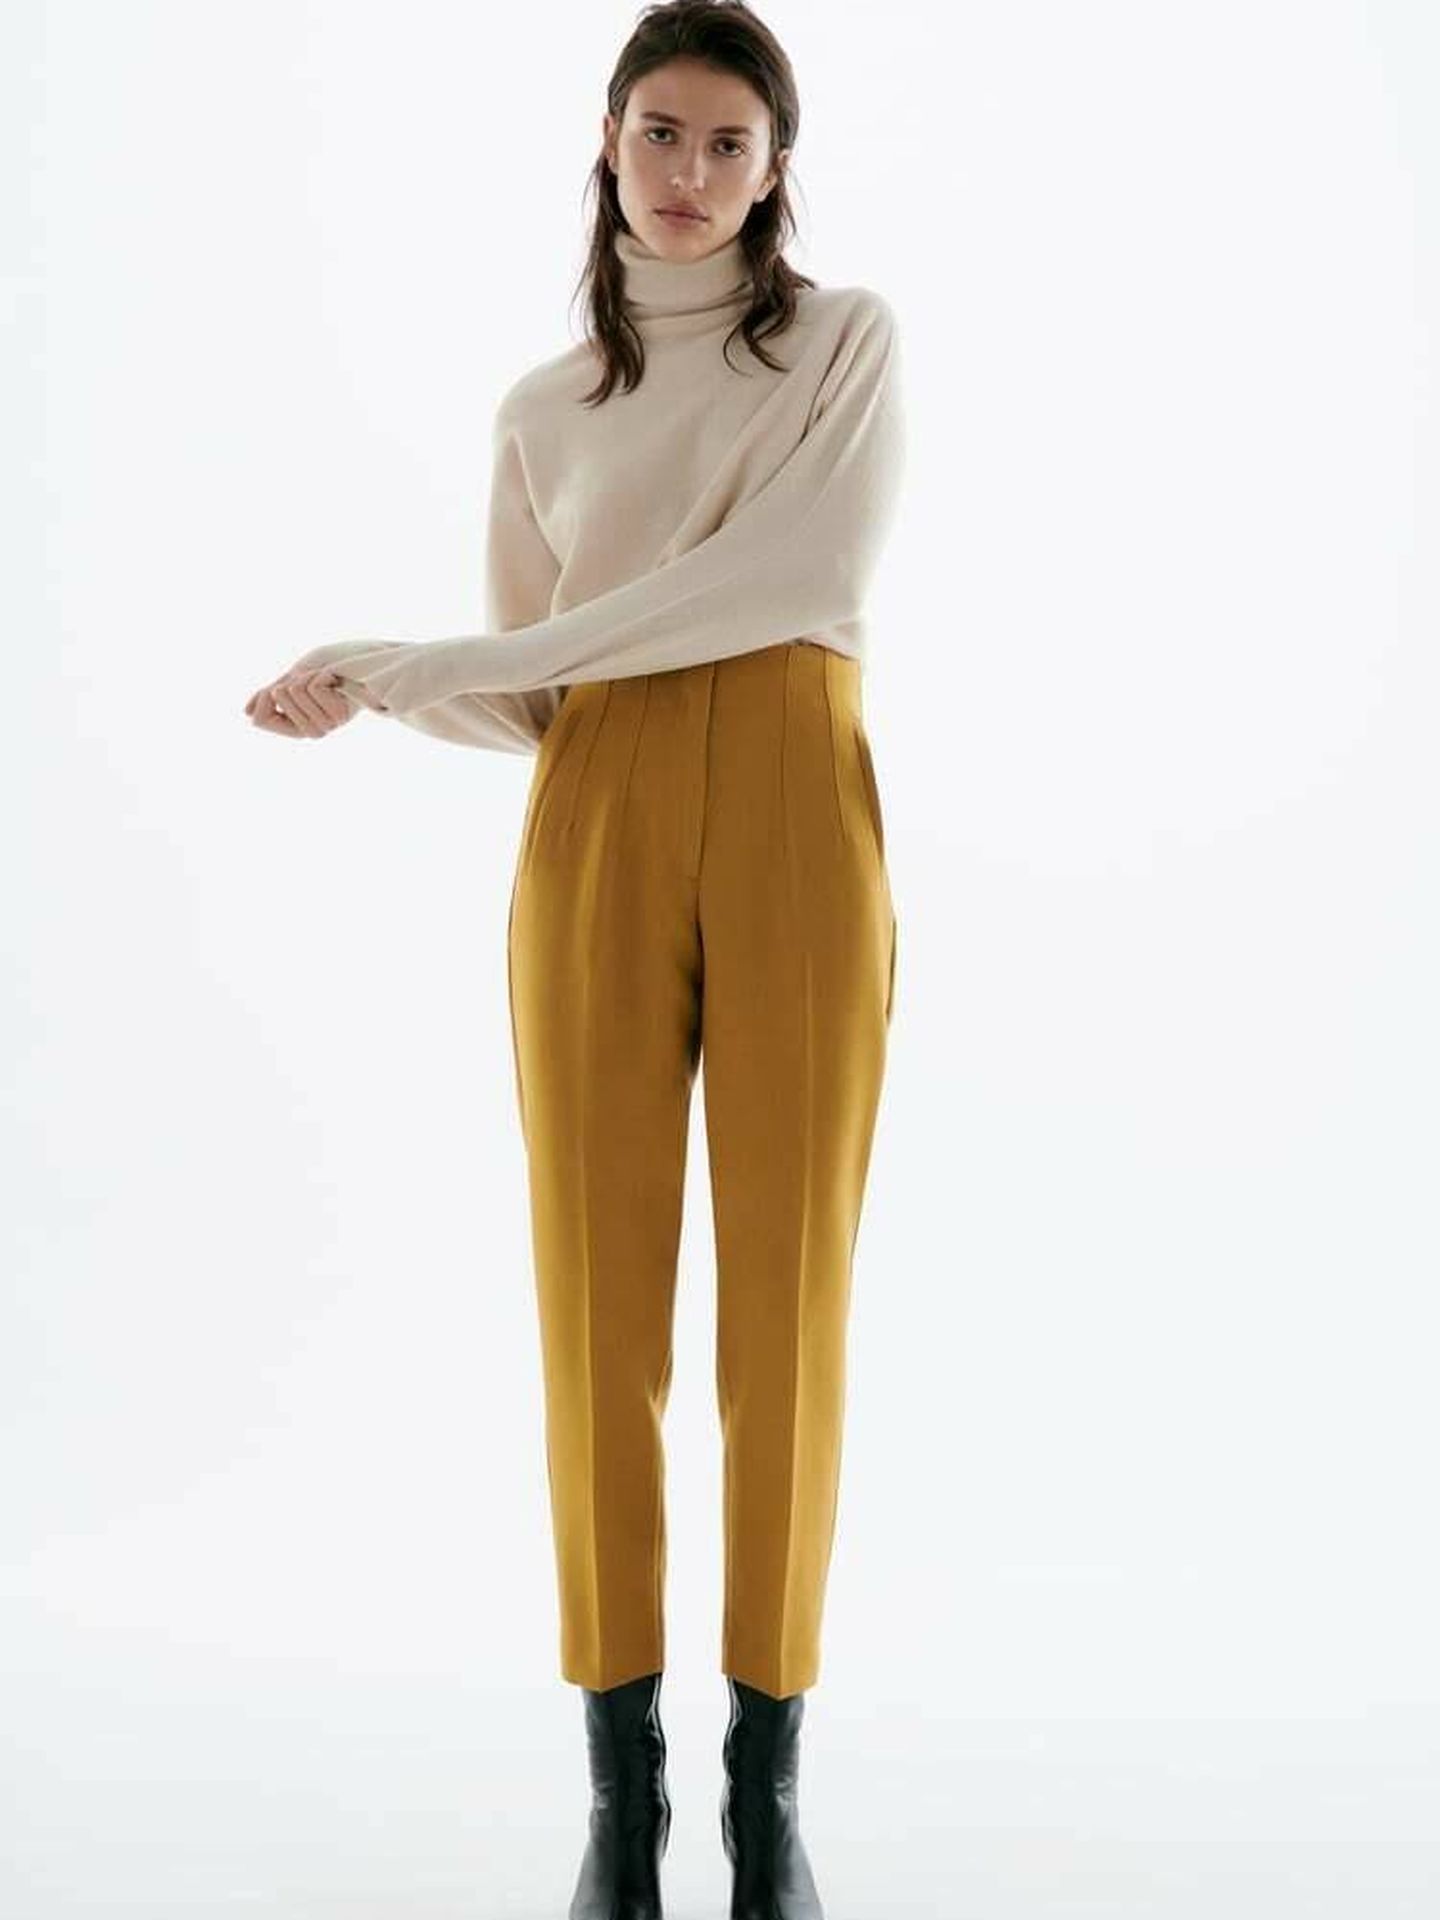 Inducir proteger abeja Ancho, cómodo y low cost: el pantalón de Zara en 12 colores